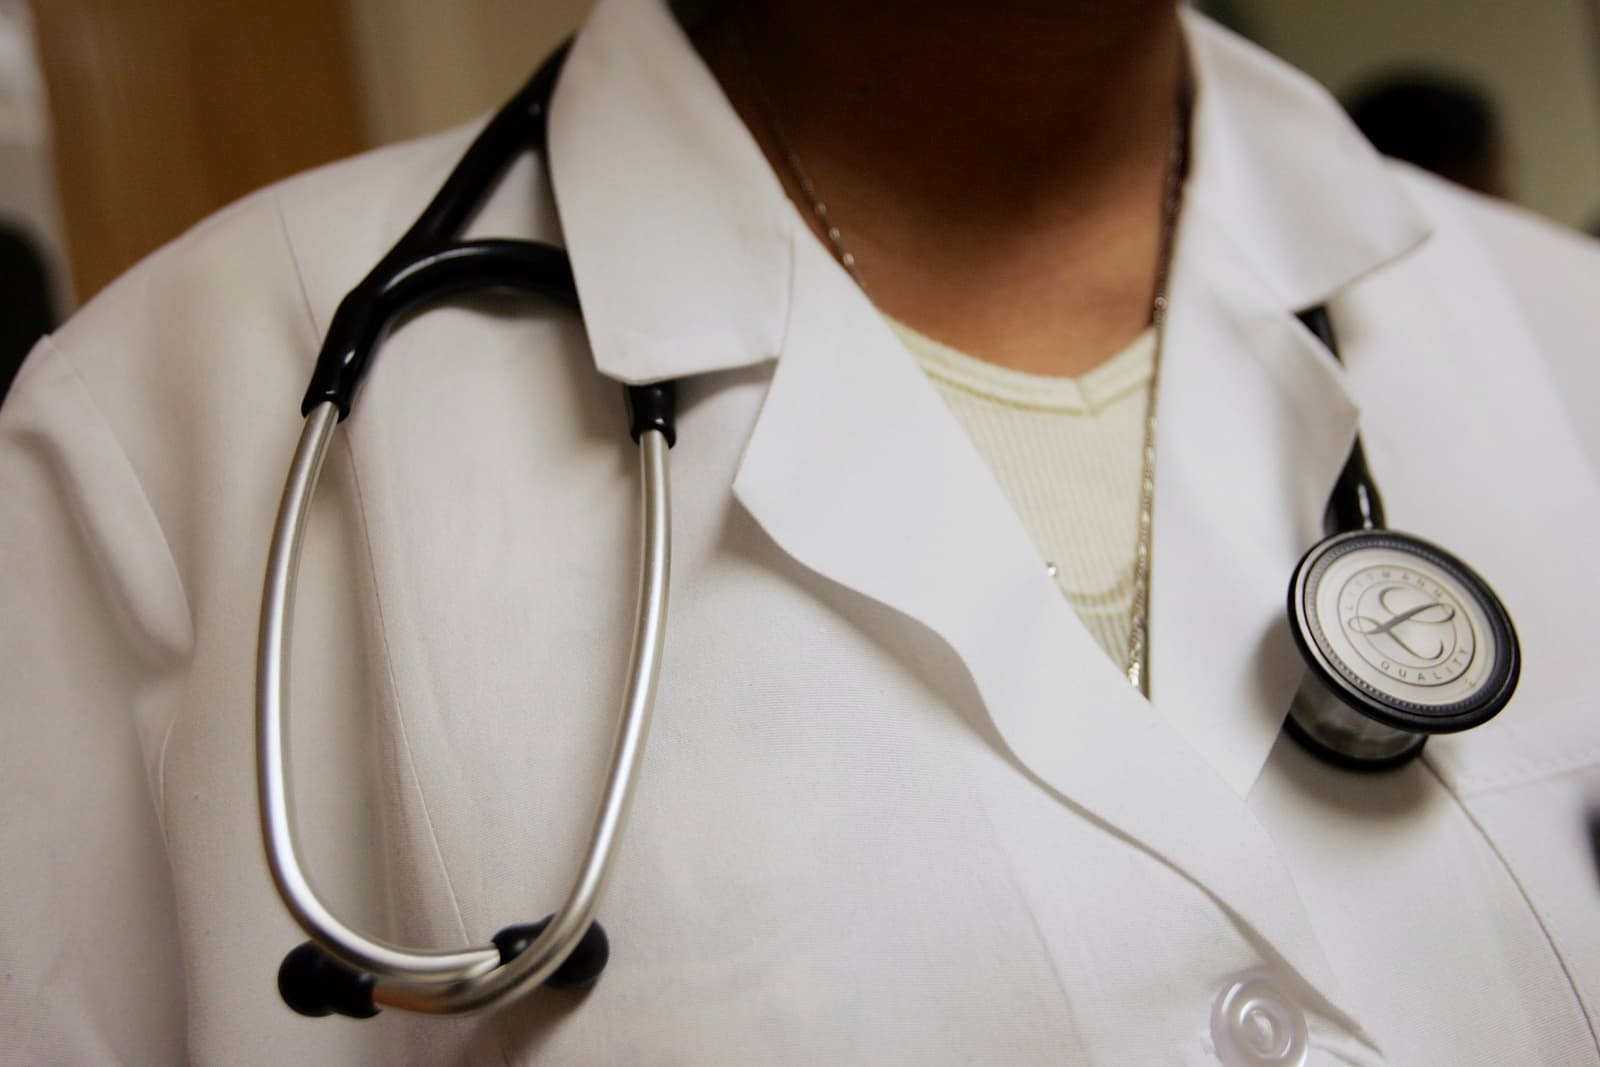 “É você quem vai me atender?”: médicas negras relatam racismo no trabalho